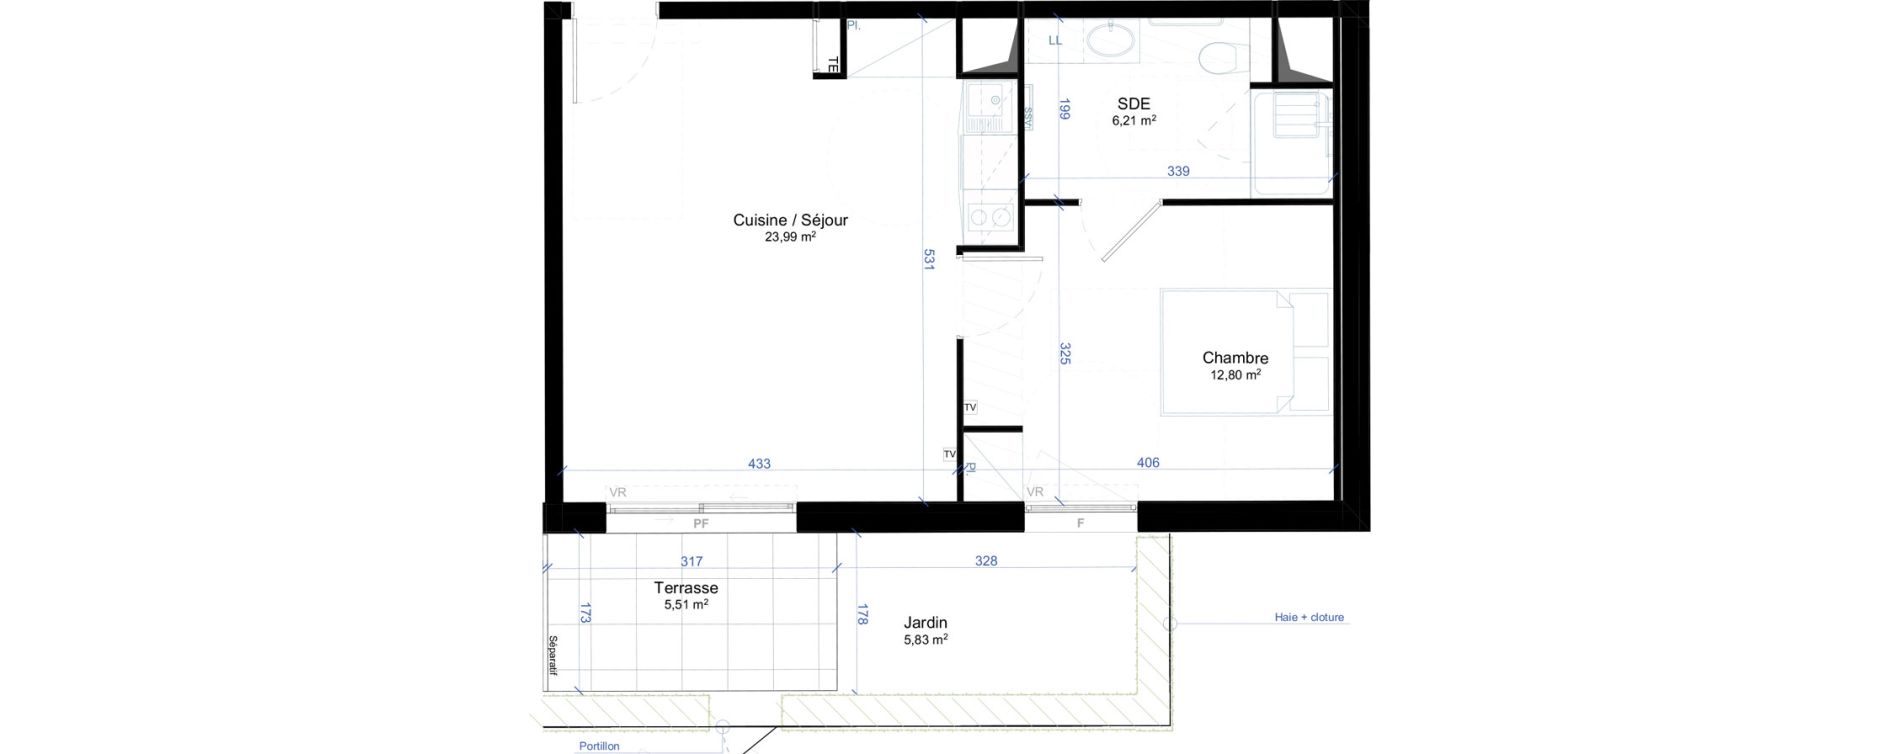 Appartement T2 meubl&eacute; de 43,00 m2 &agrave; Narbonne Anatole france - gare